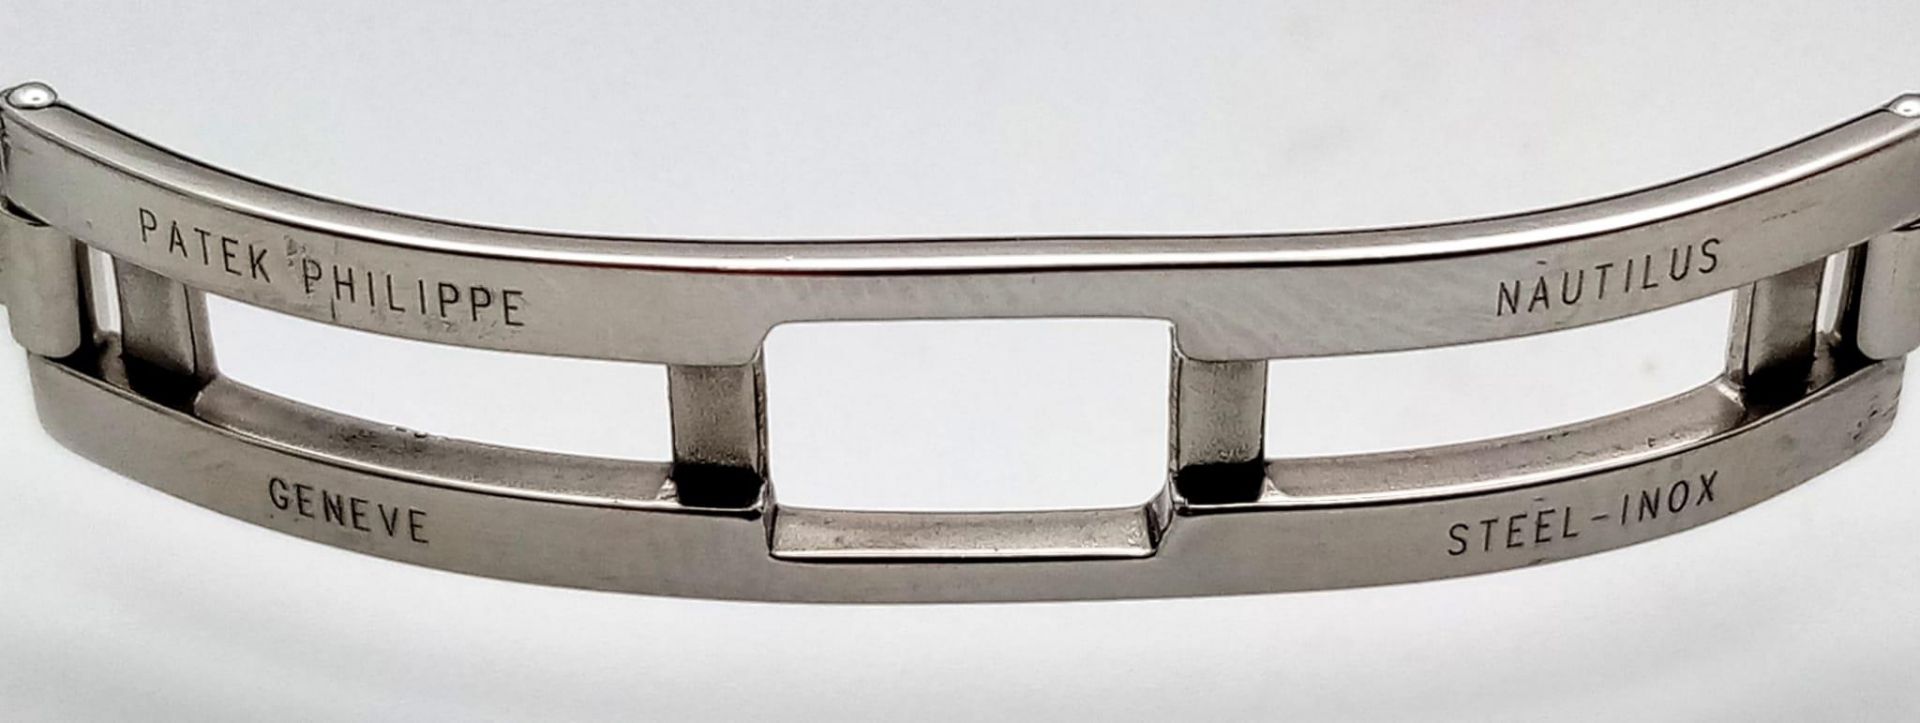 A Patek Phillippe Aquanaut Watch. Textured black rubber strap. Stainless steel case - 36mm. - Bild 8 aus 8